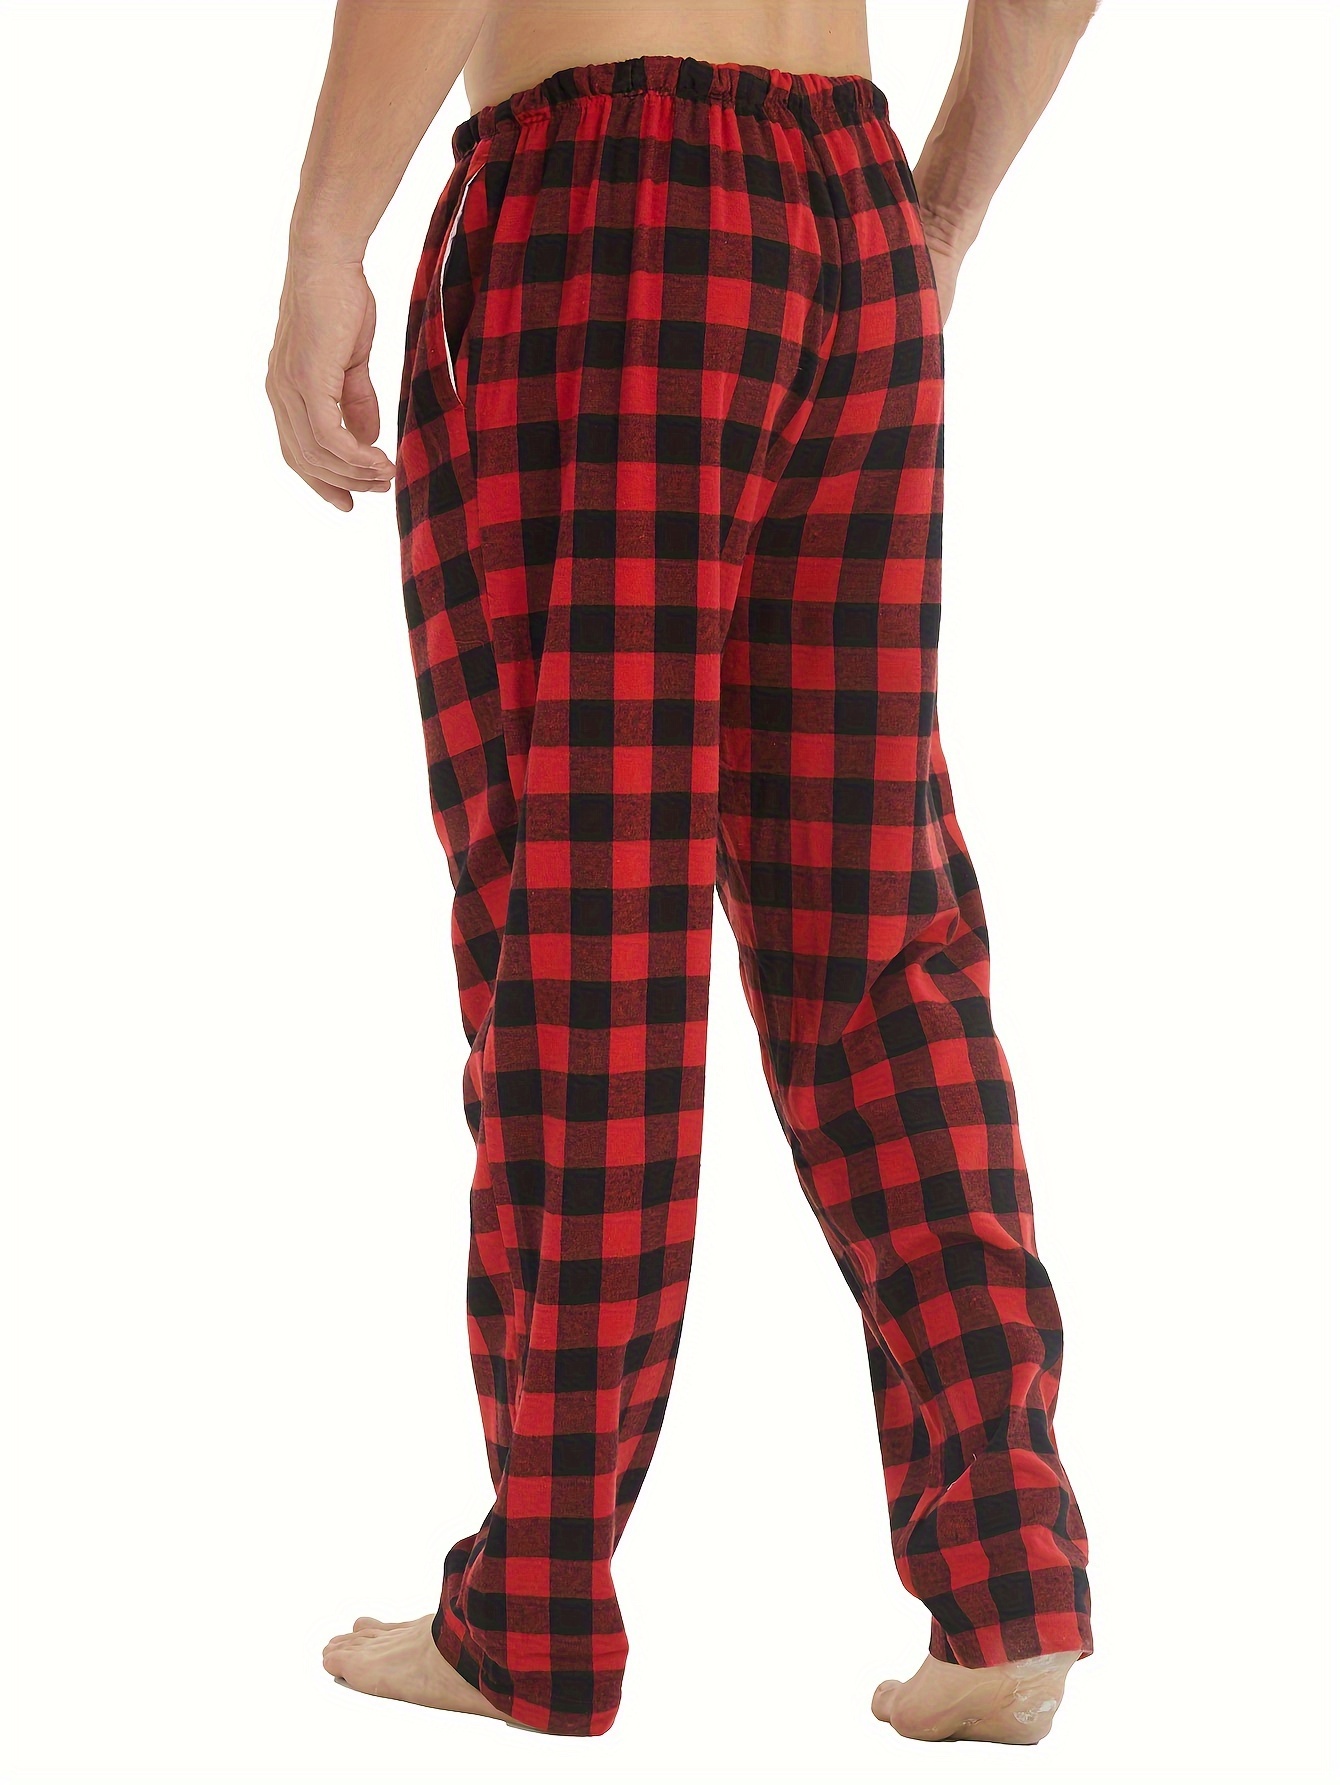 Men's Flannel Pajamas Pants Set Cotton Plaid Pjs Bottoms - Temu